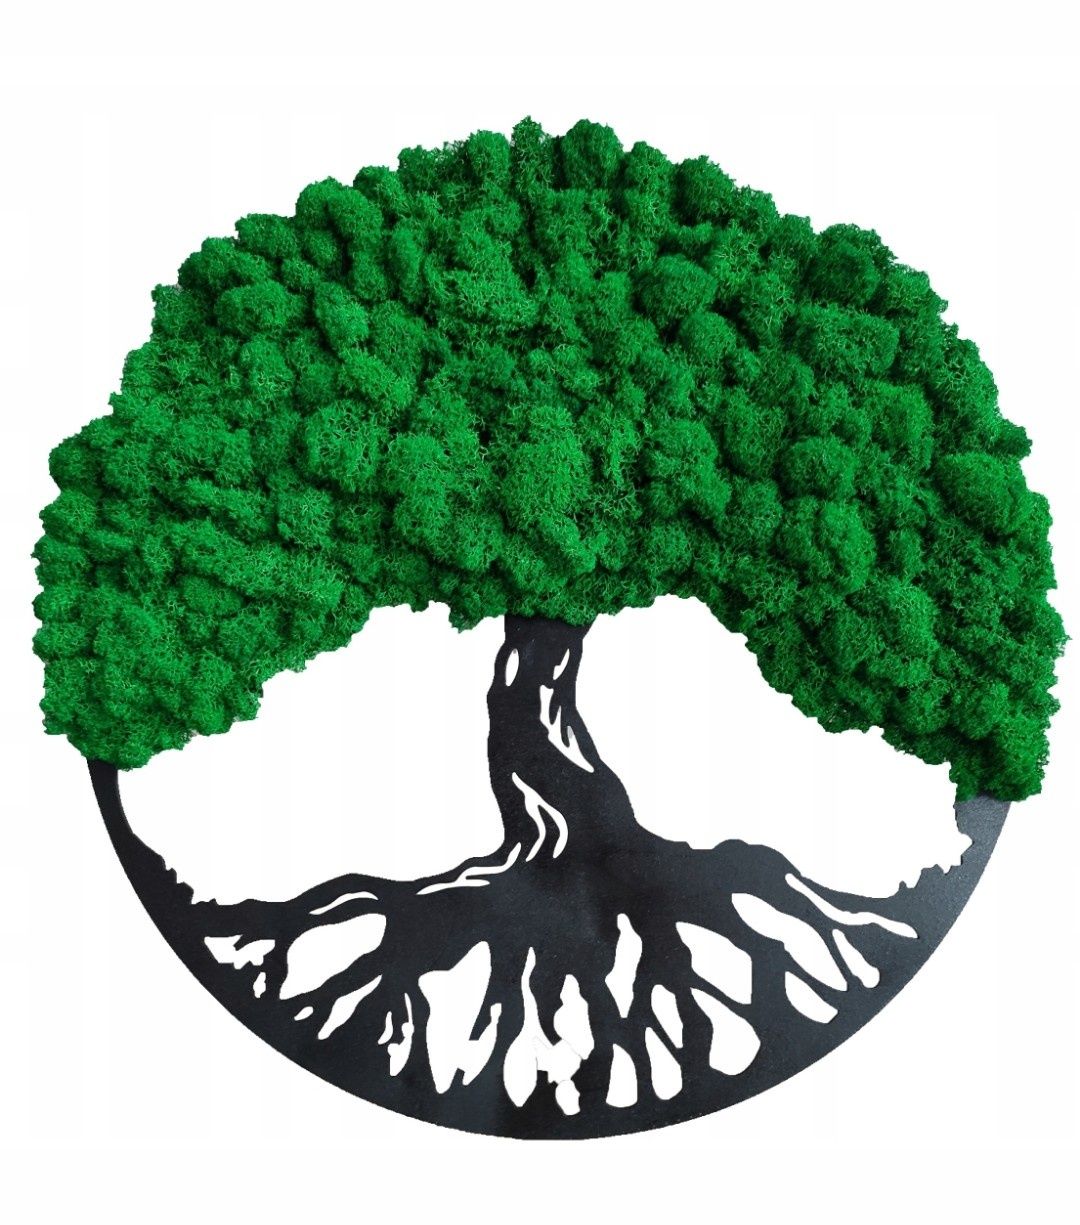 Drzewo życia obraz żywy mech chrobotek